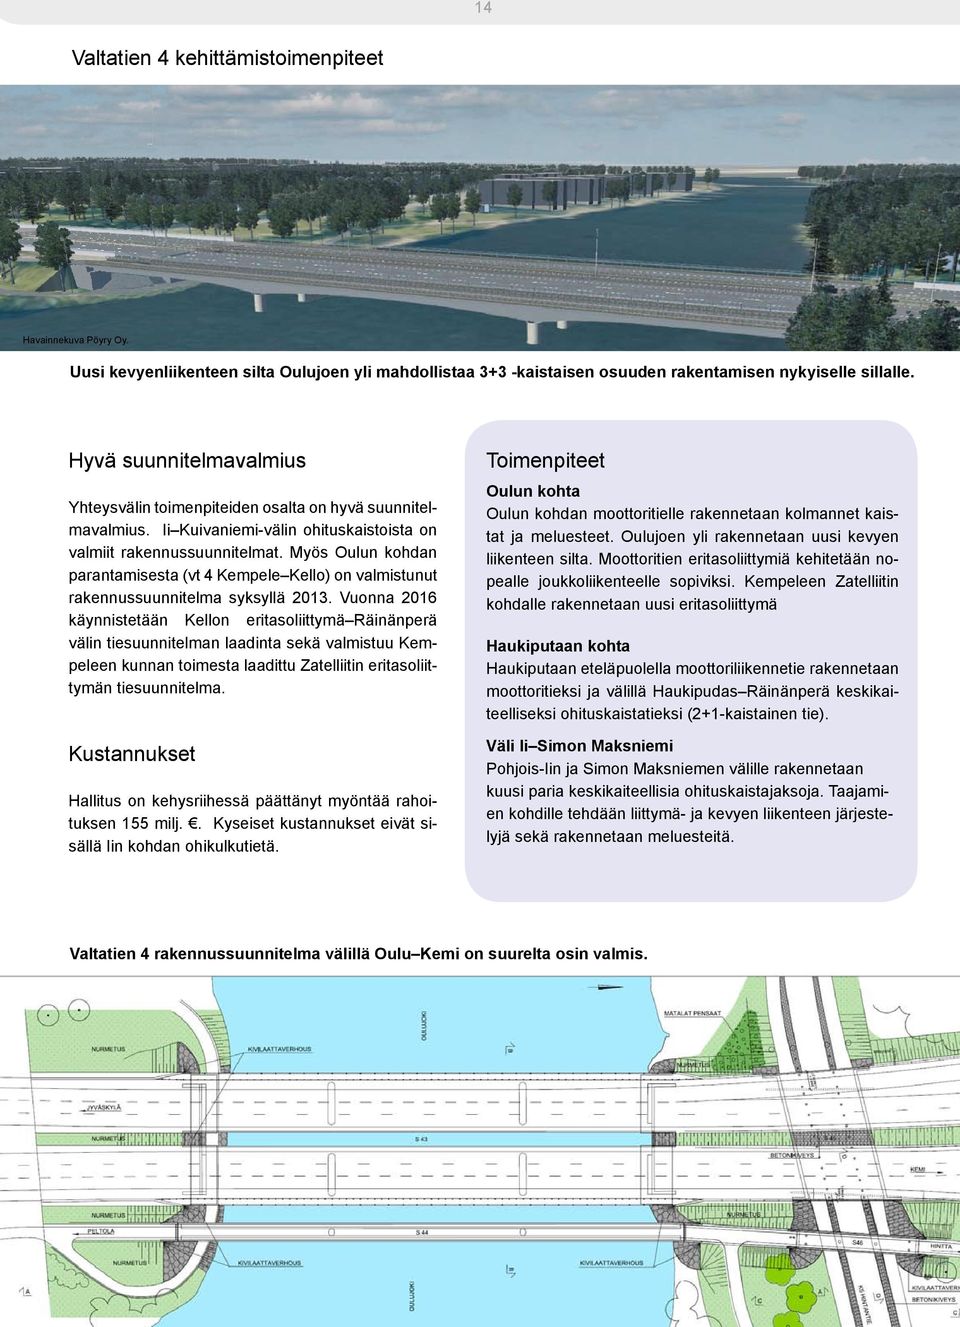 Myös Oulun kohdan parantamisesta (vt 4 Kempele Kello) on valmistunut rakennussuunnitelma syksyllä 2013.